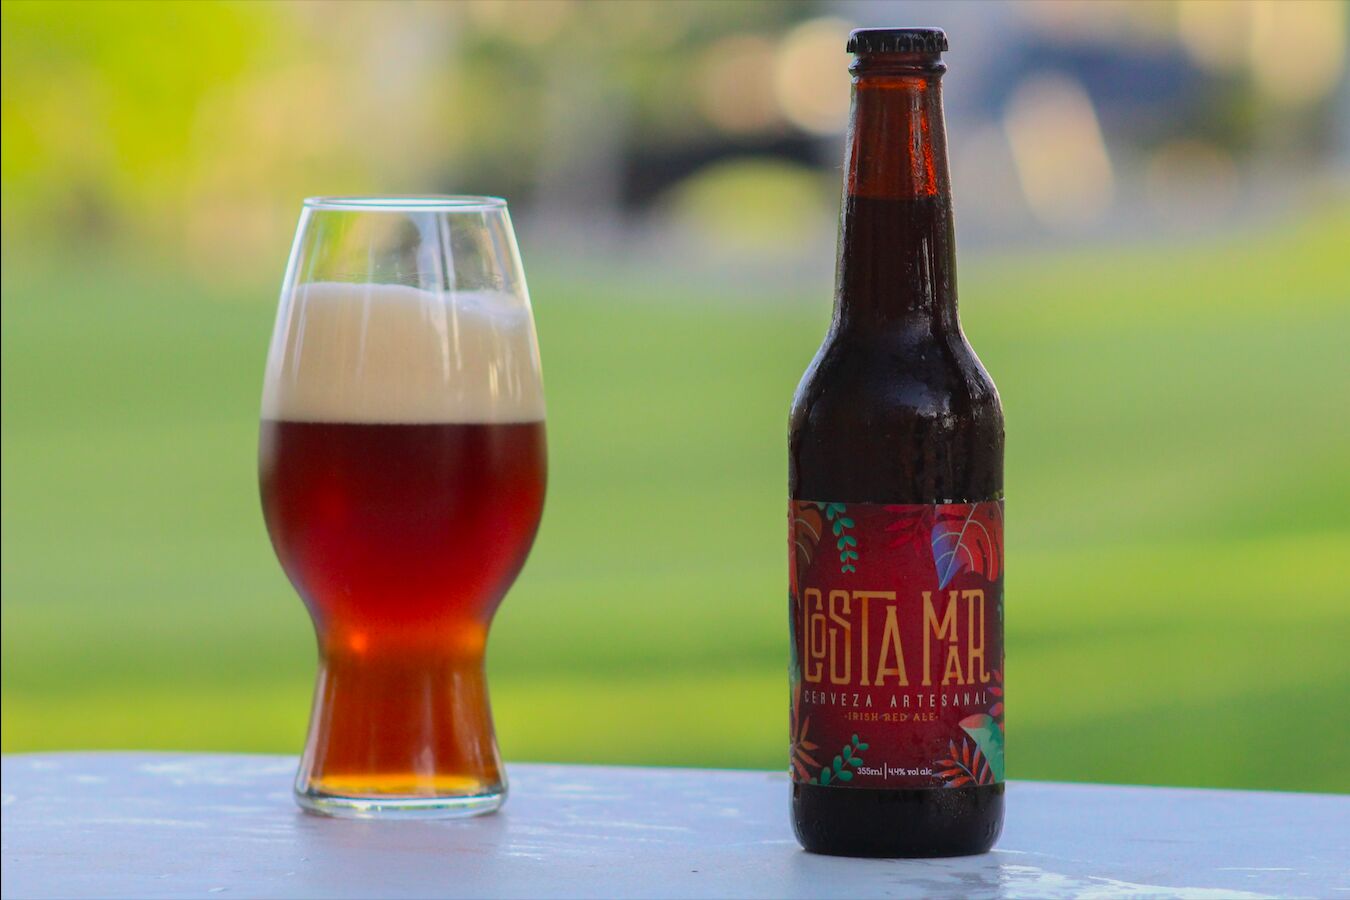 Cerveza marca Costamar "Irish Red Ale" embotellada y servida en vaso.